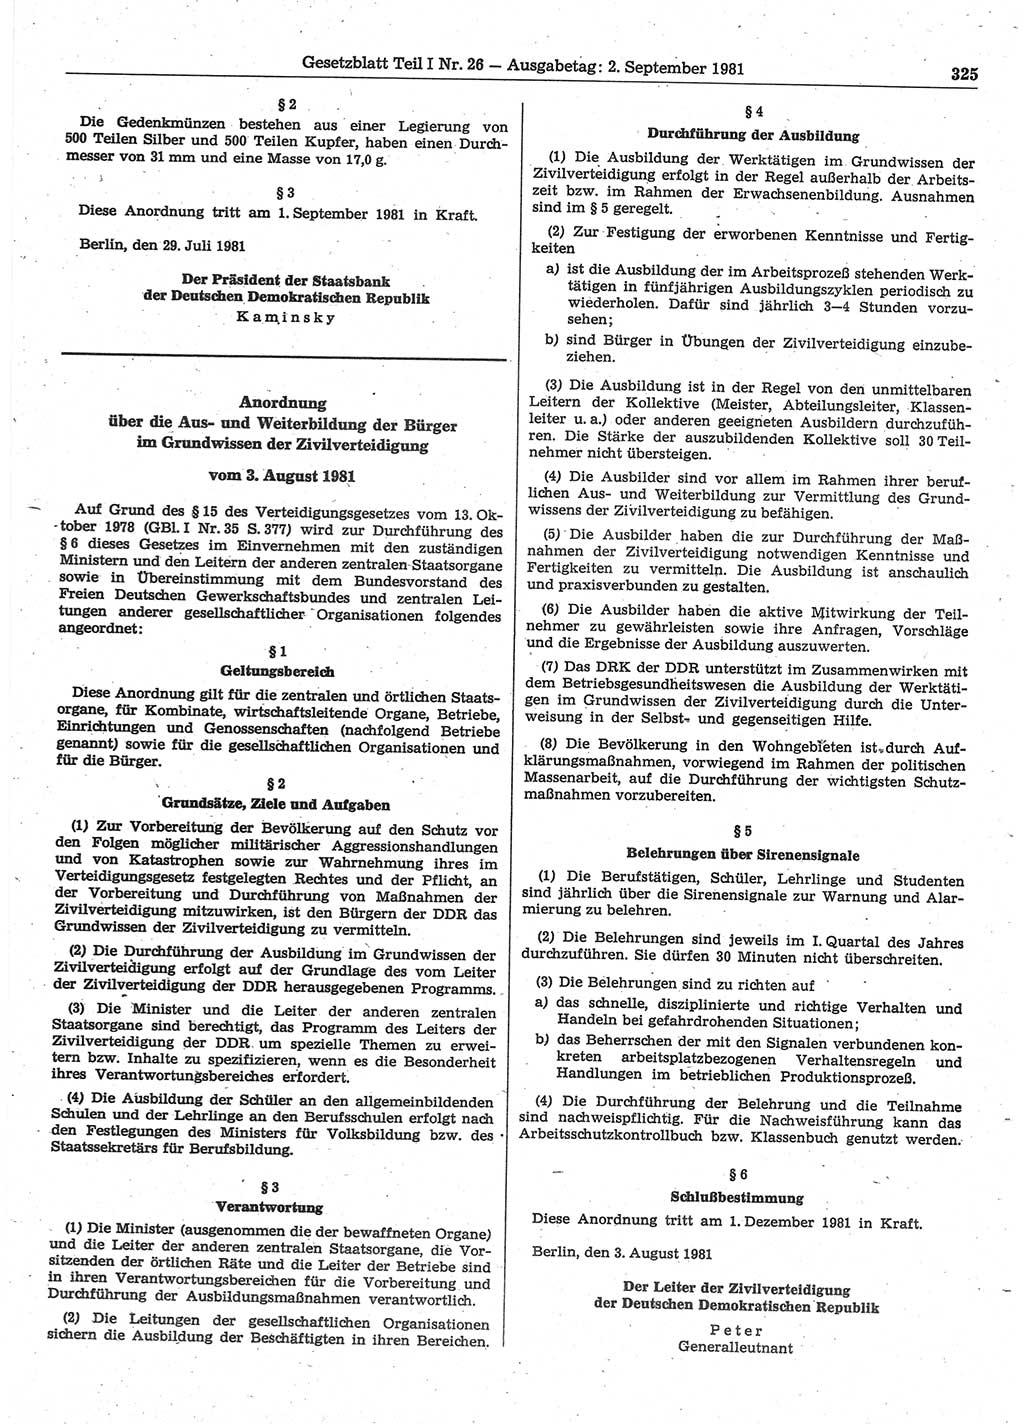 Gesetzblatt (GBl.) der Deutschen Demokratischen Republik (DDR) Teil Ⅰ 1981, Seite 325 (GBl. DDR Ⅰ 1981, S. 325)